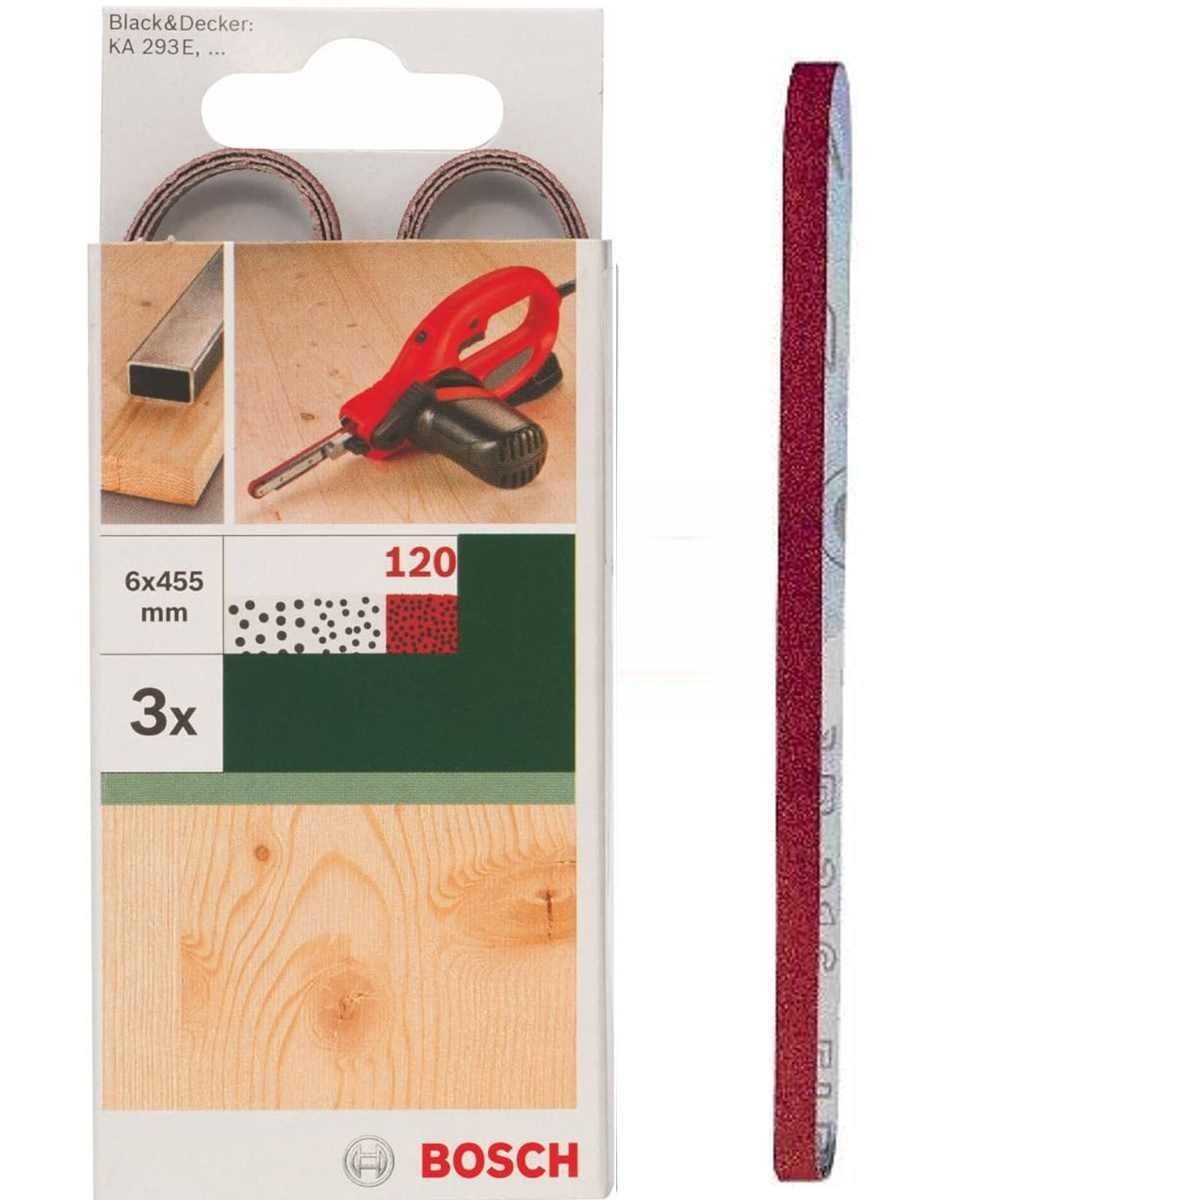 BOSCH Bohrfutter Bosch 3 x Schleifbänder für B+D Powerfile KA 293E 6 x 451 mm, K 120